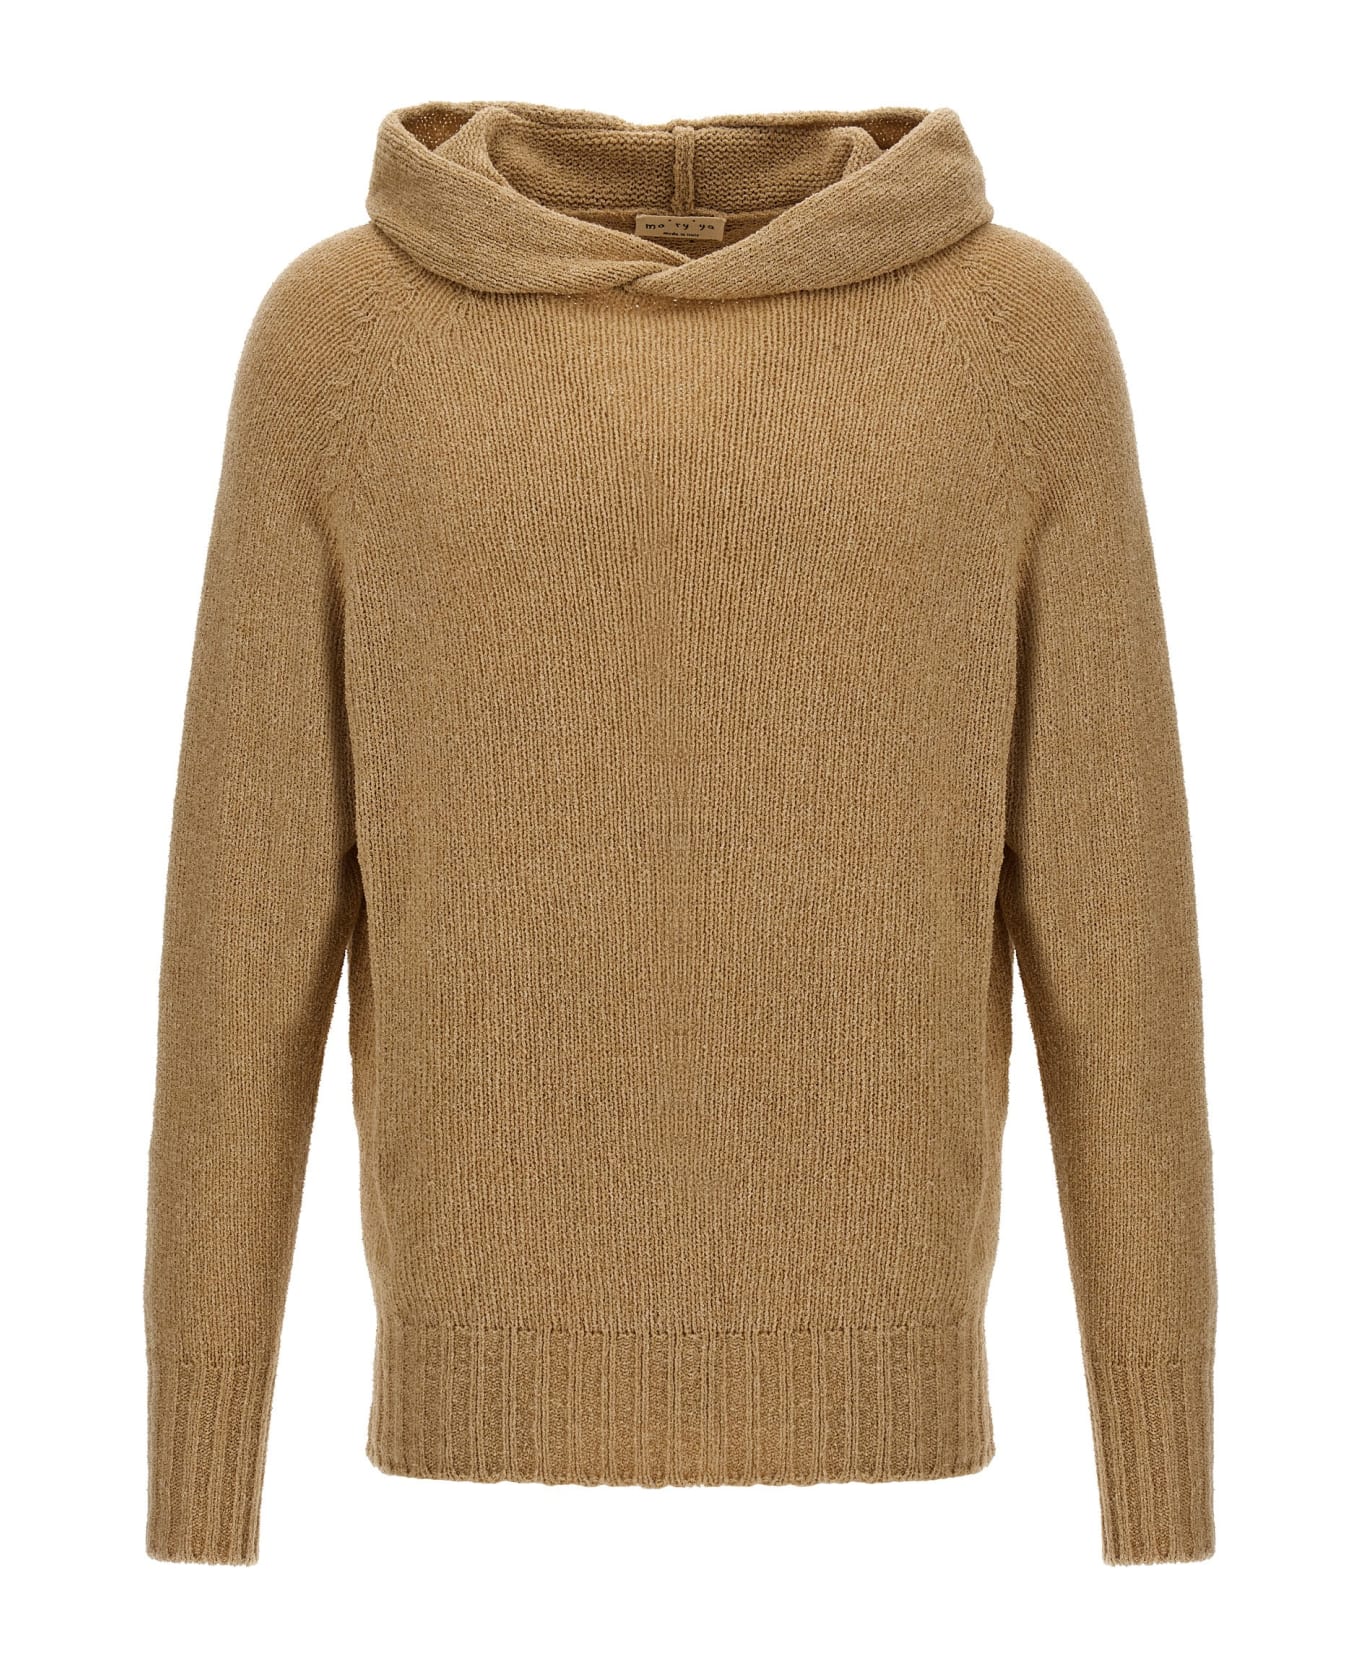 Ma'ry'ya Hooded Sweater - Beige